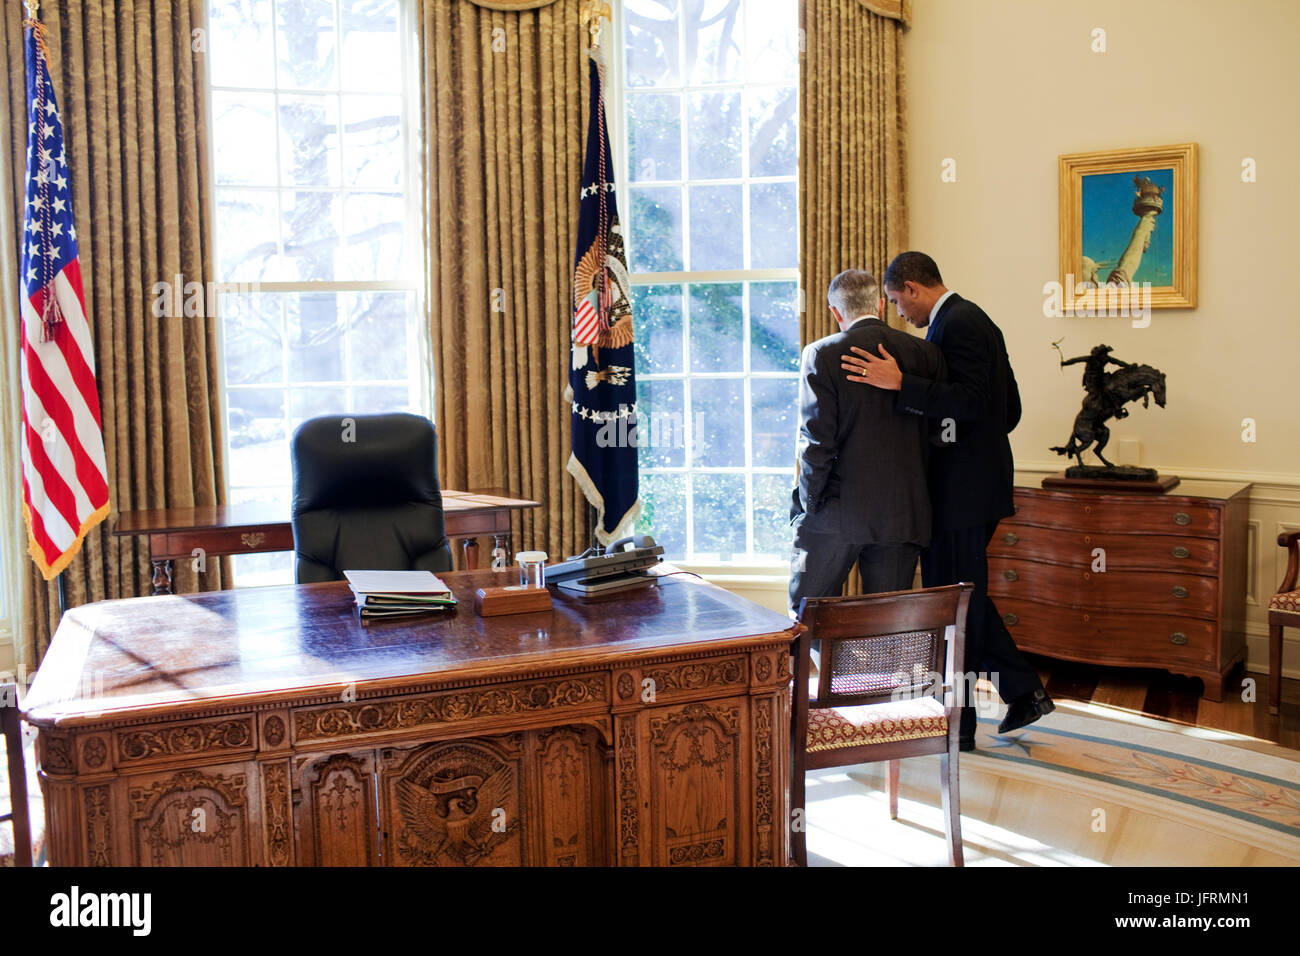 Le président Barack Obama parle seul avec le chef de la majorité au Sénat Harry Reid dans le bureau ovale après réunion bipartite. 1/23/09 Photo Officiel de la Maison Blanche par Pete Souza Banque D'Images